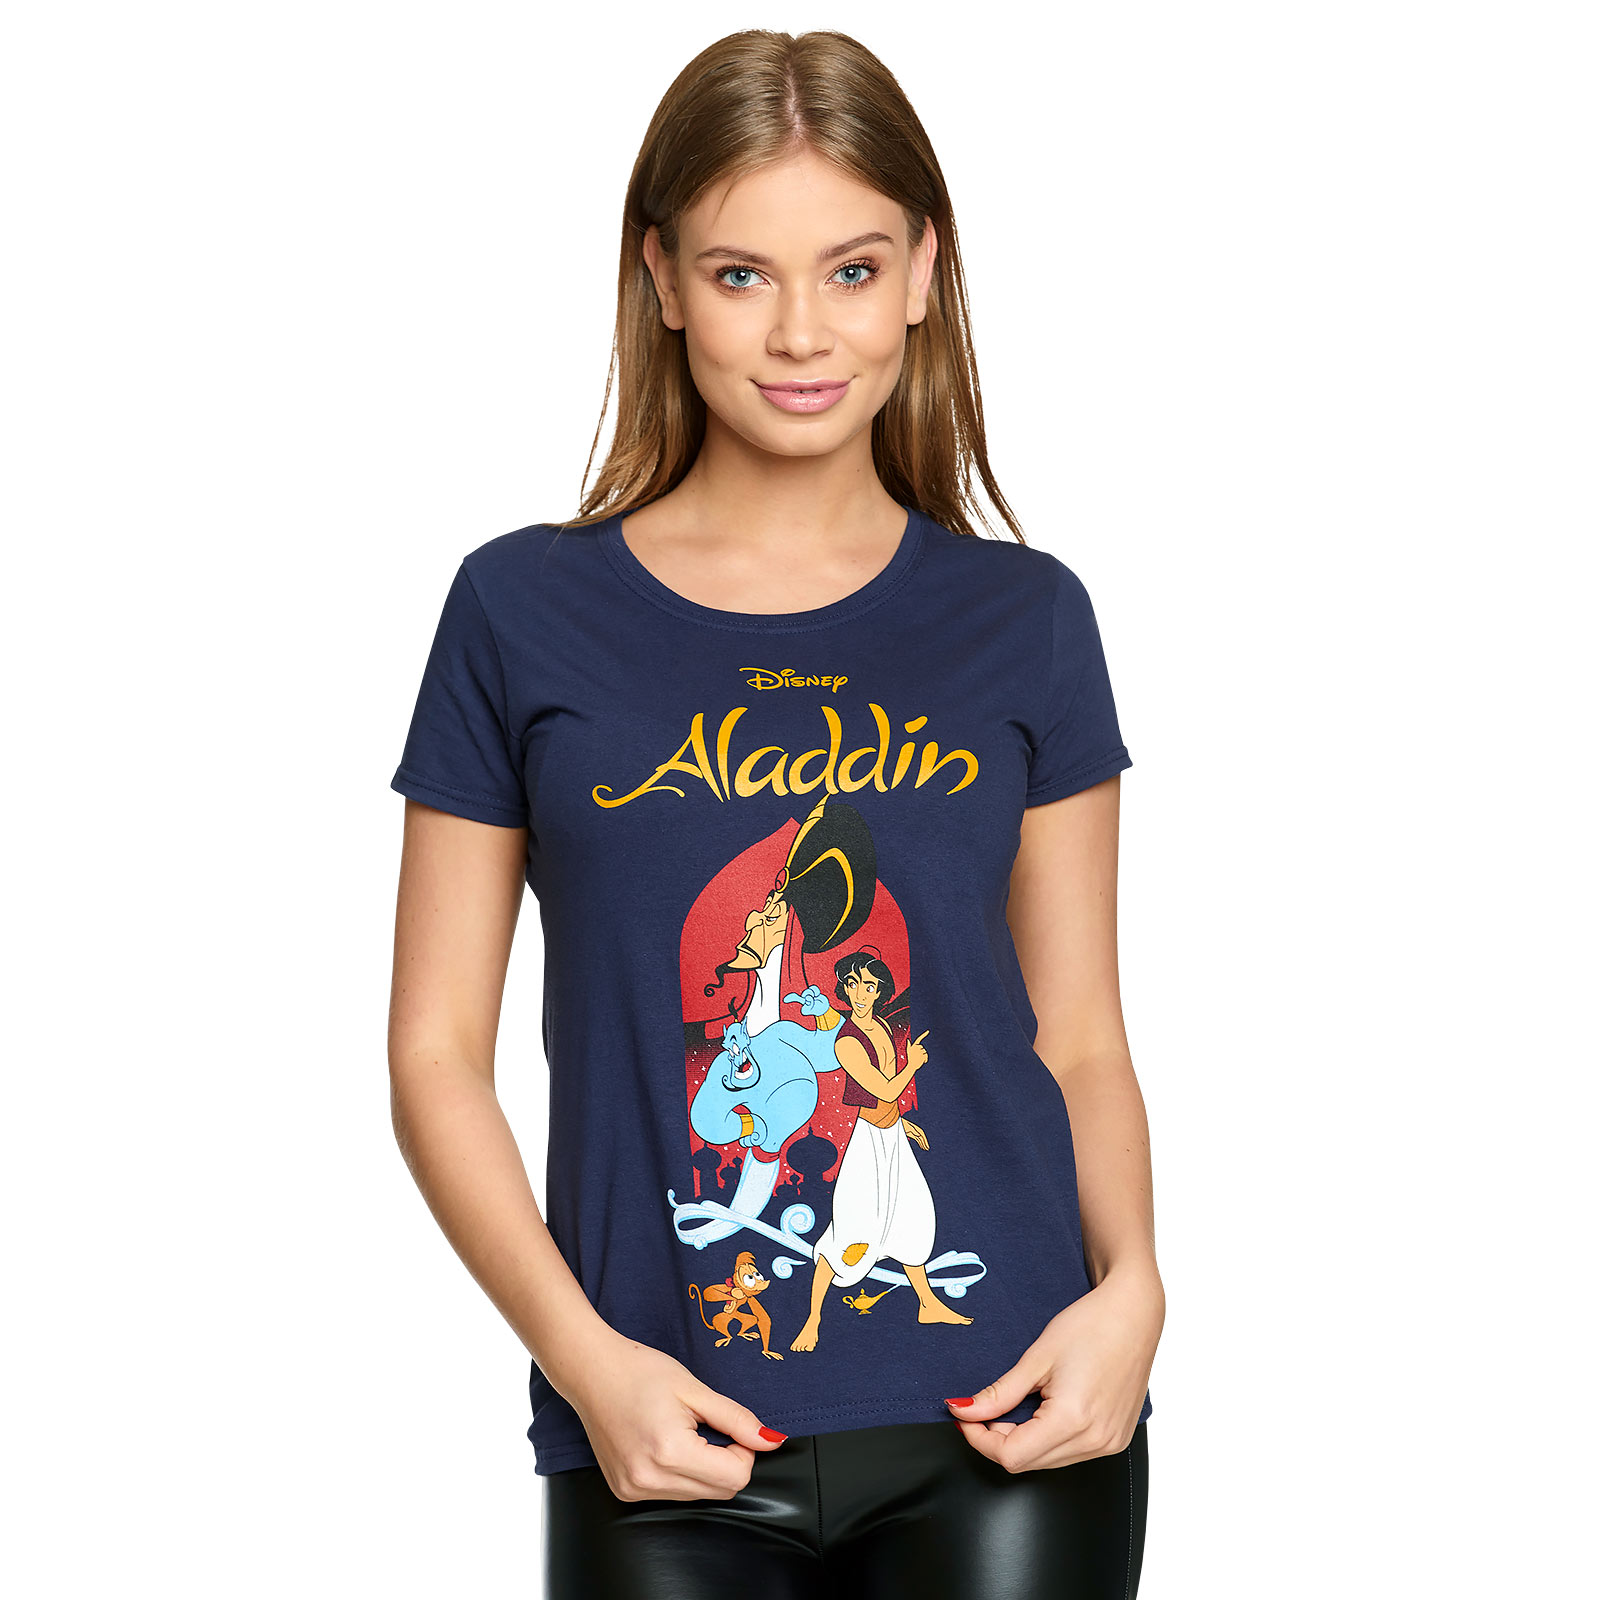 Aladdin - Jafar et Aladdin T-shirt Femme bleu